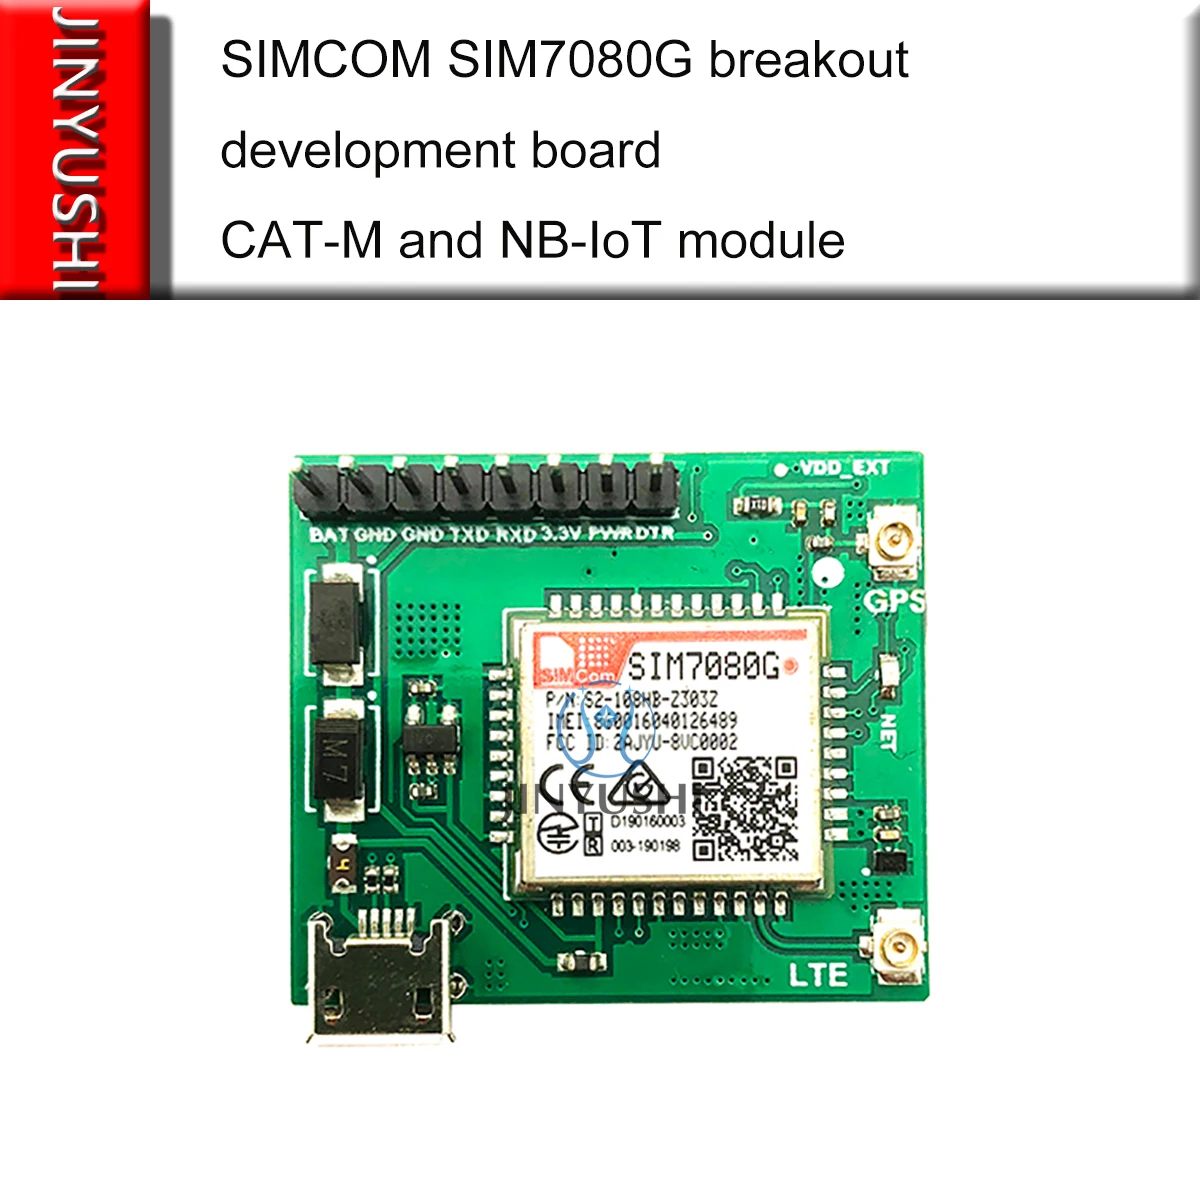 SIMCOM-Placa de desarrollo SIM7080G, con puerto USB, LTE, y nb-iot CAT-M,  Compatible con SIM868